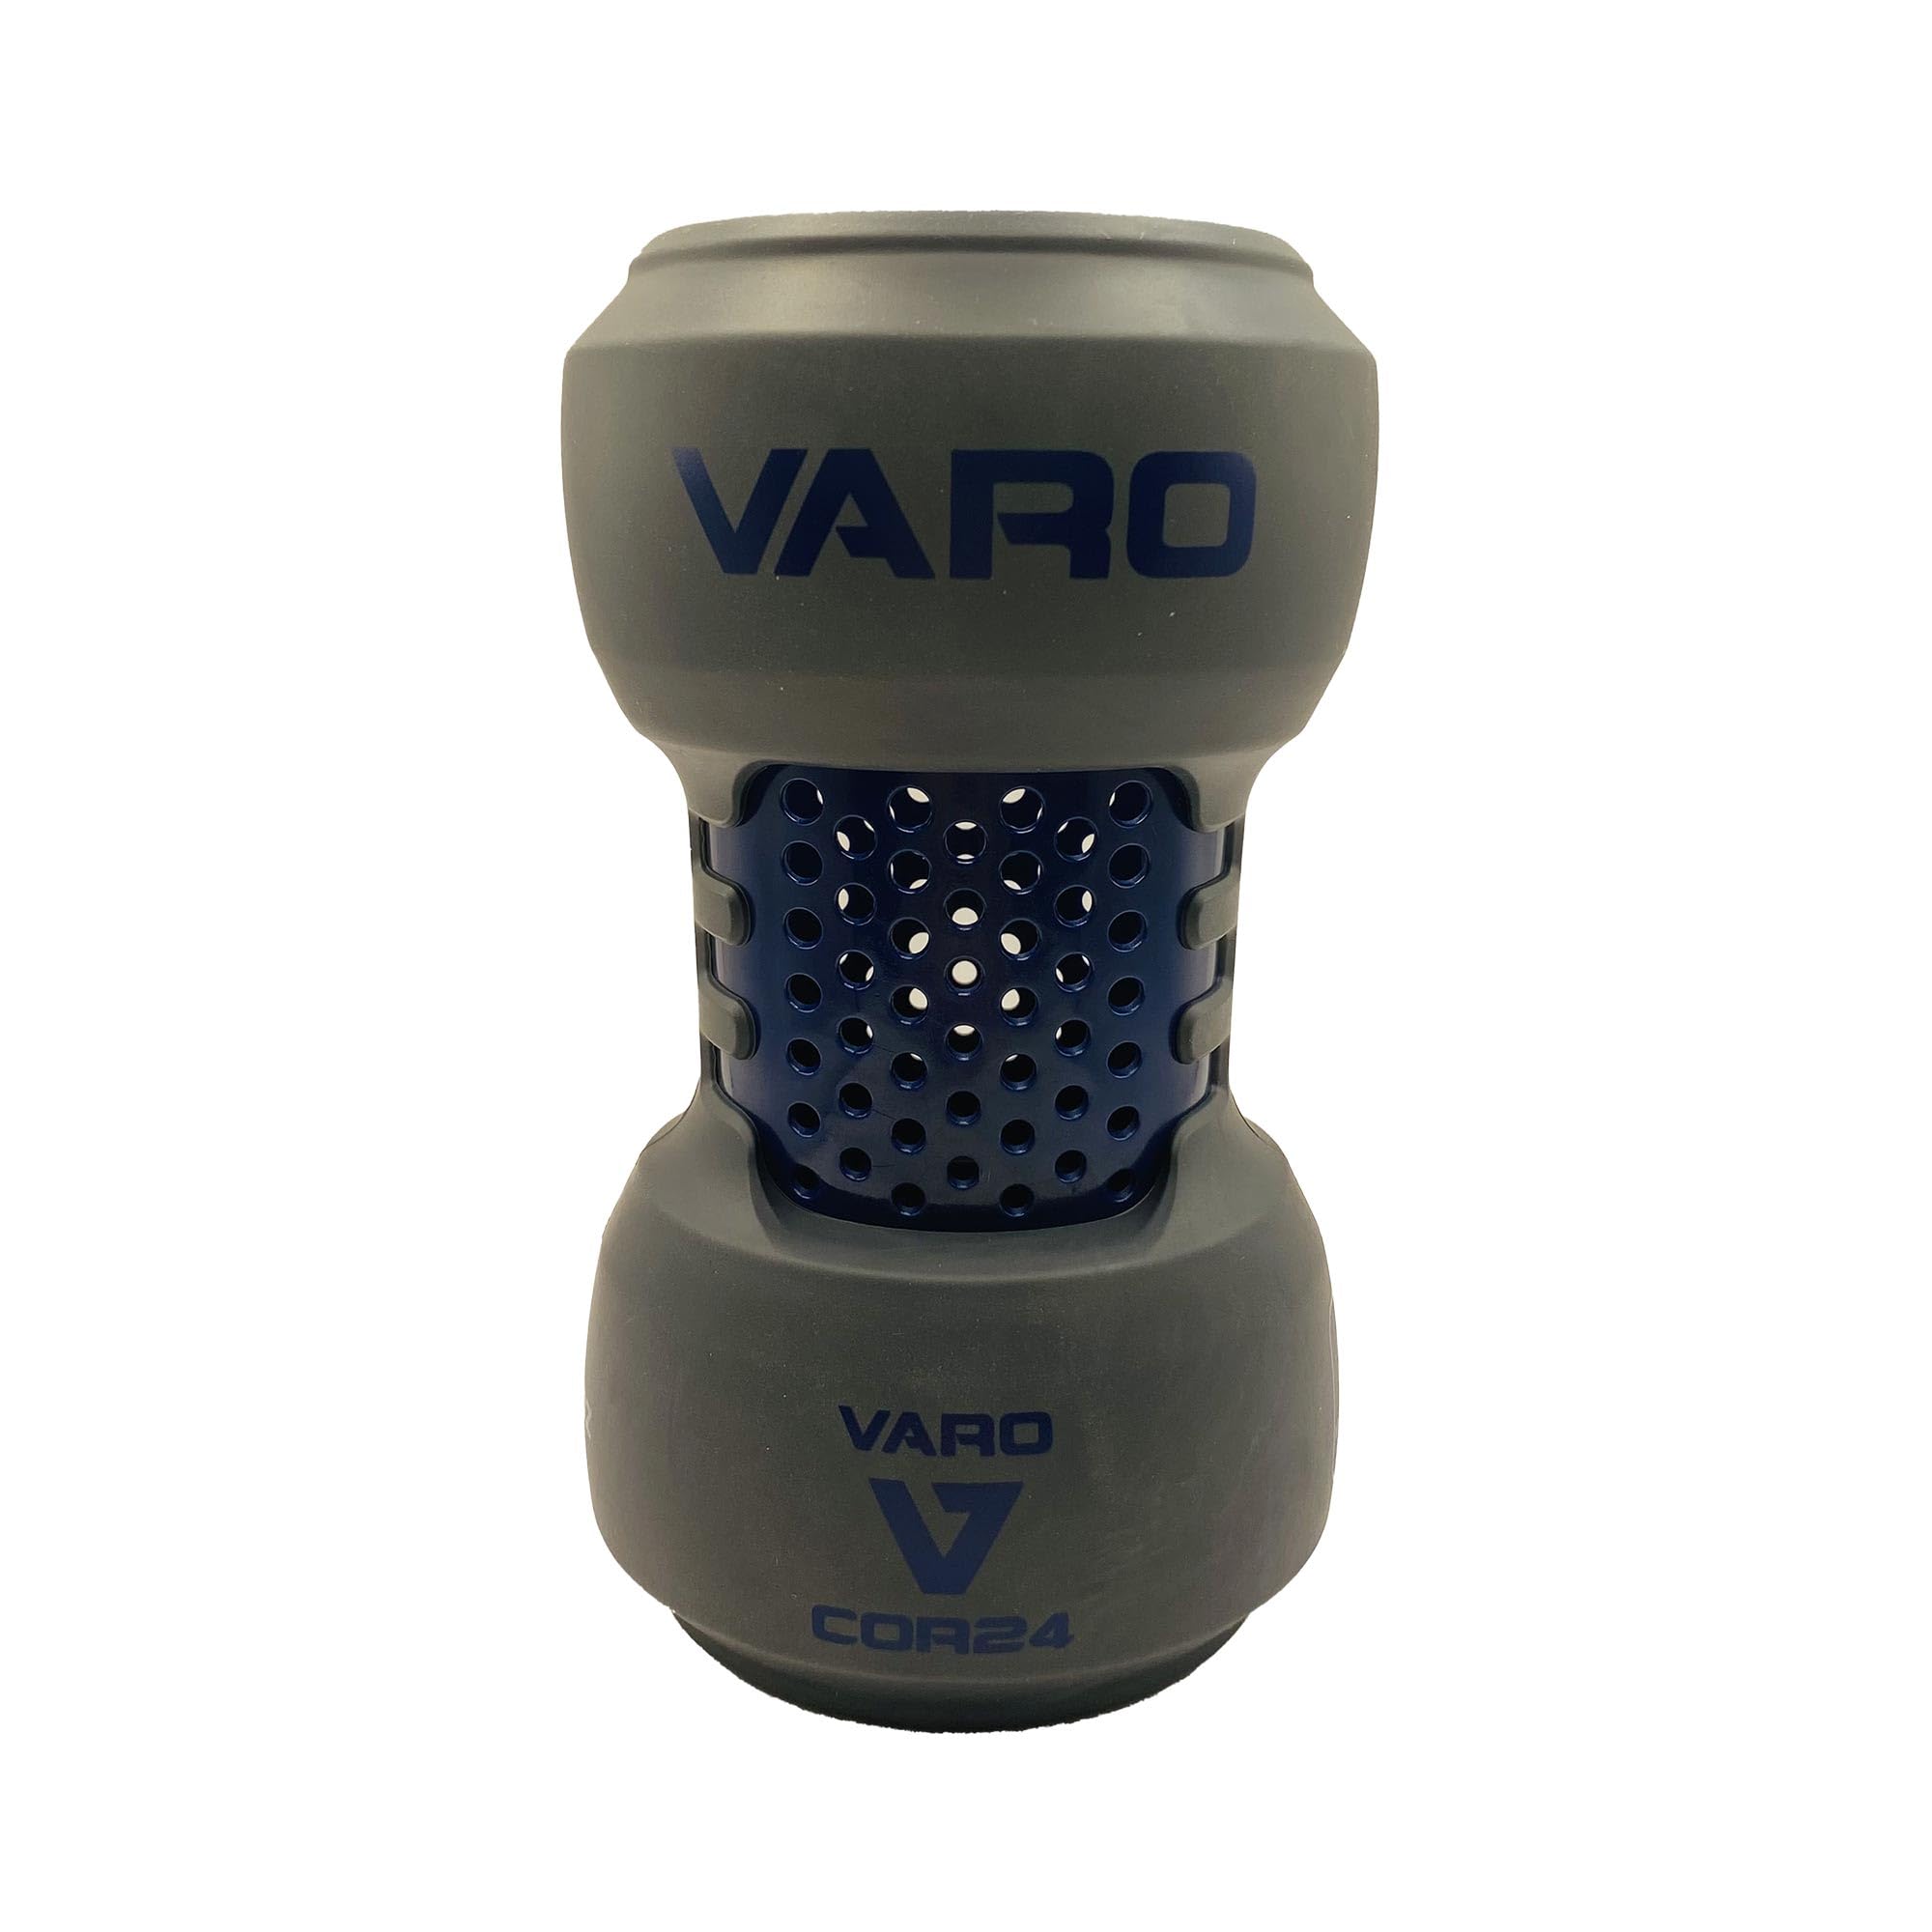 Varo COR Schläger-Trainingsgewicht, 680 g, für Baseball (MLB Authentic) – klassisches Gewichtsgefühl – verbessern Sie Ihre Schwünge und Kraft, gepolsterte Passform eliminiert Abrieb am Schläger,